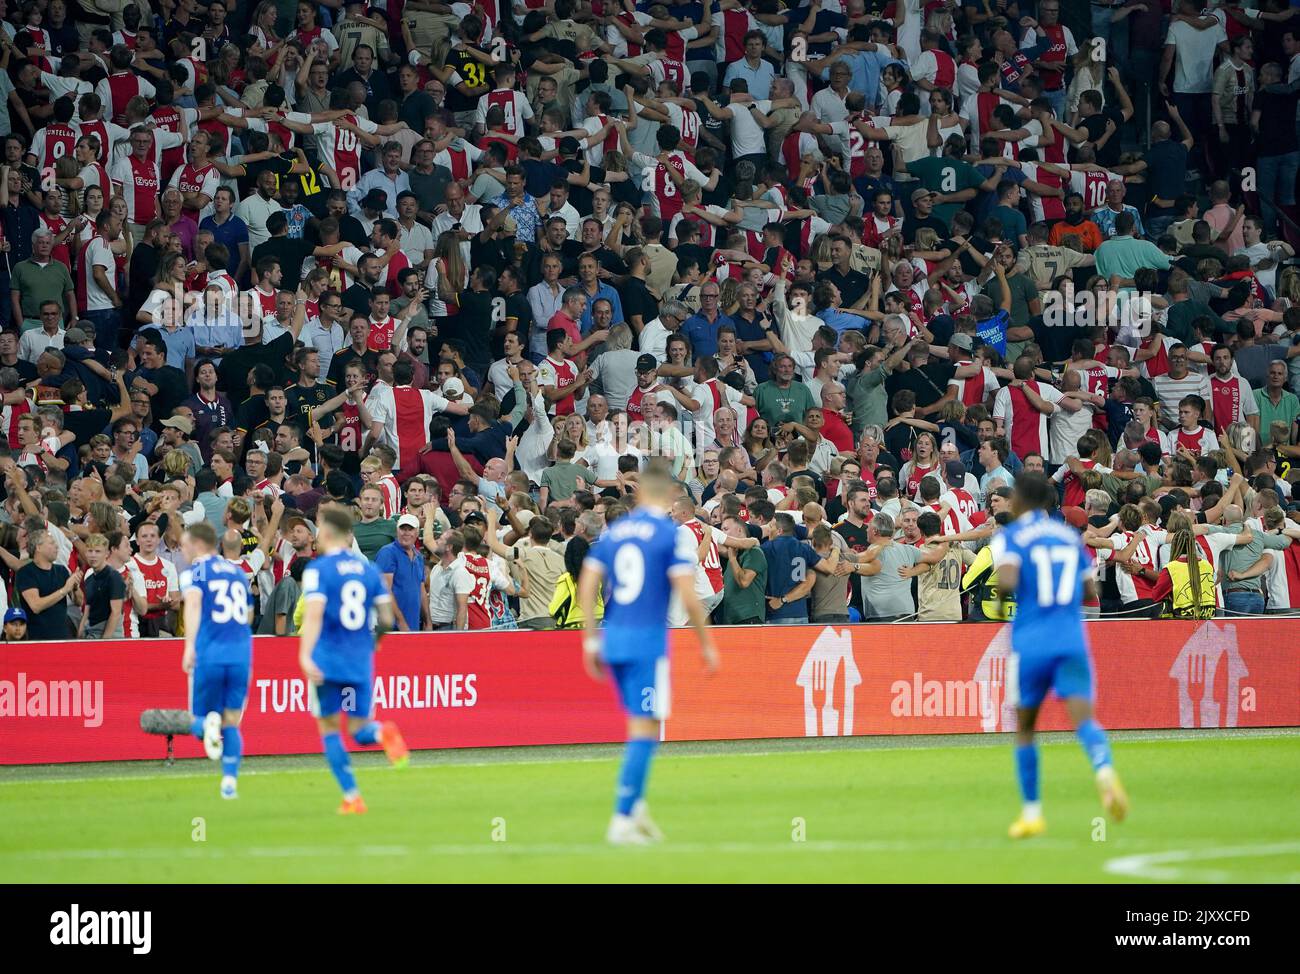 Ajax-Fans auf den Tribünen während des Spiels der UEFA Champions League Group F in der Johan Cruyff Arena in Amsterdam, Niederlande. Bilddatum: Mittwoch, 7. September 2022. Stockfoto